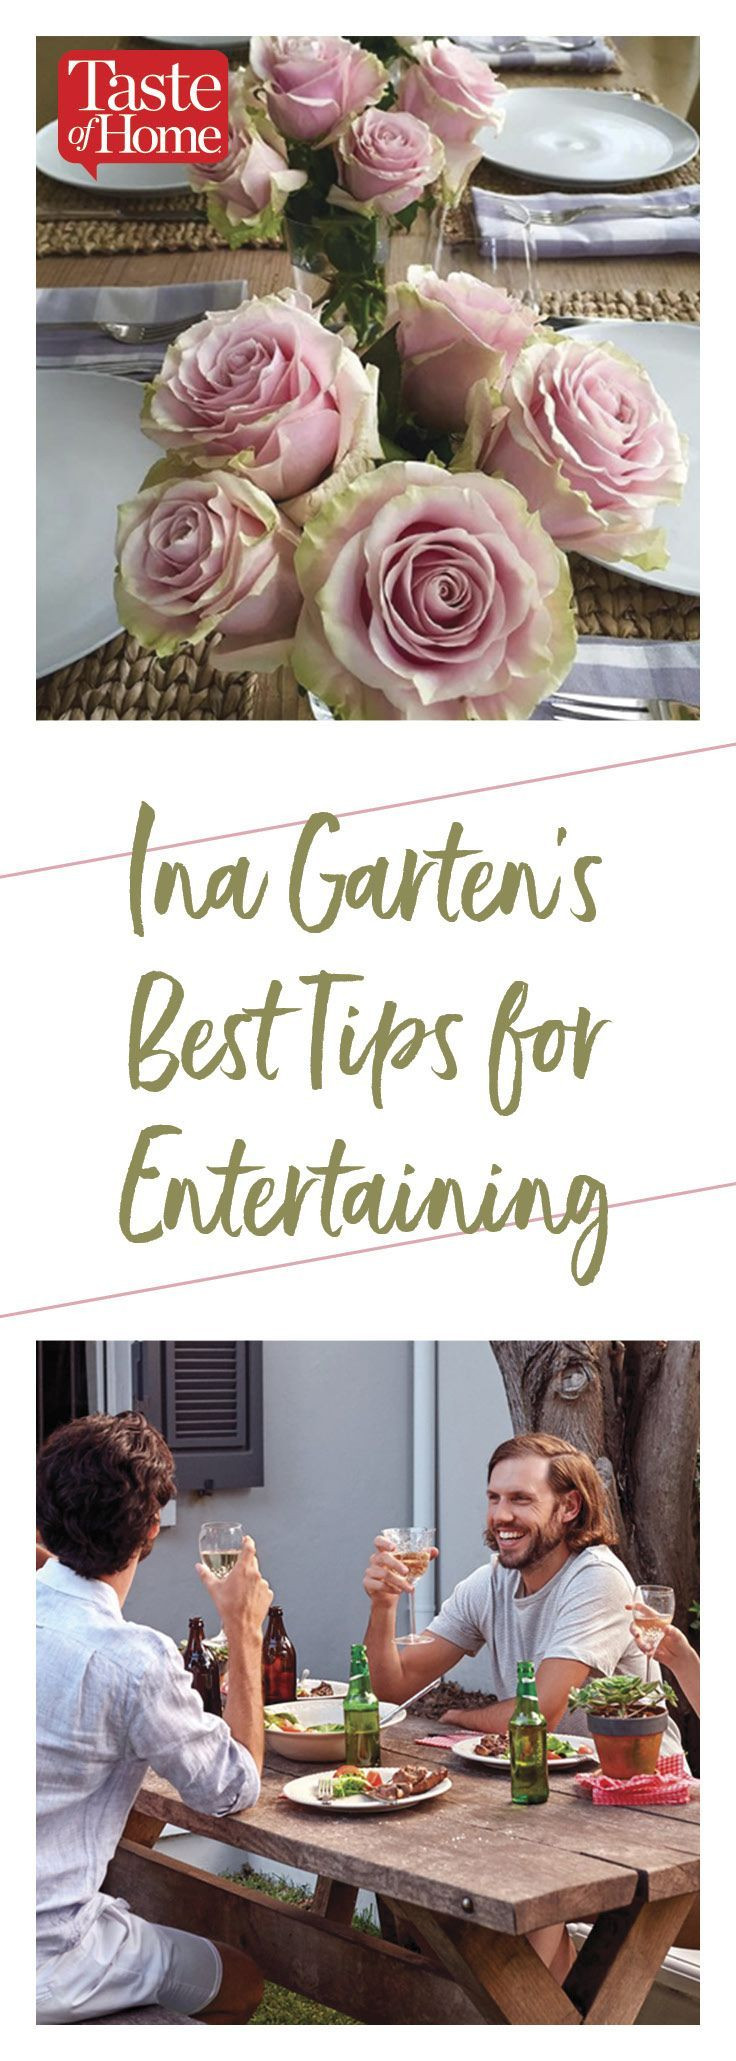 Ina Garten Easter Dinner
 Ina Garten s Best Tips for Entertaining